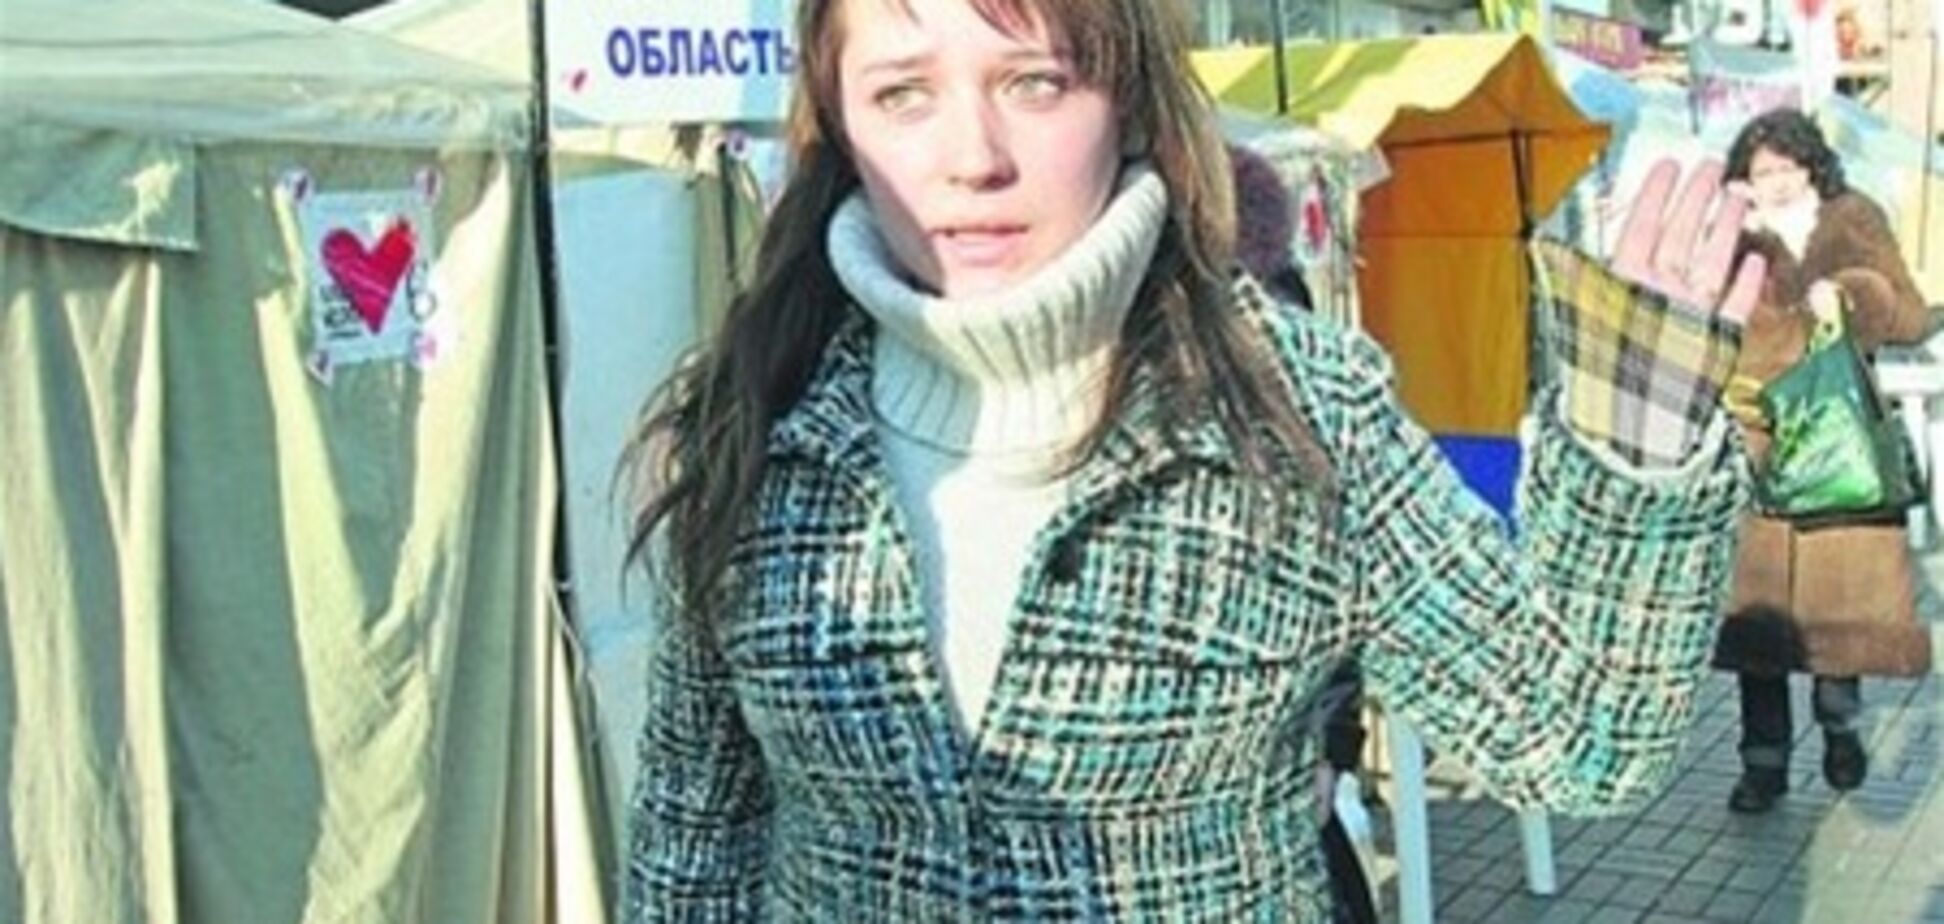 В палаточном городке Тимошенко разгорелся скандал